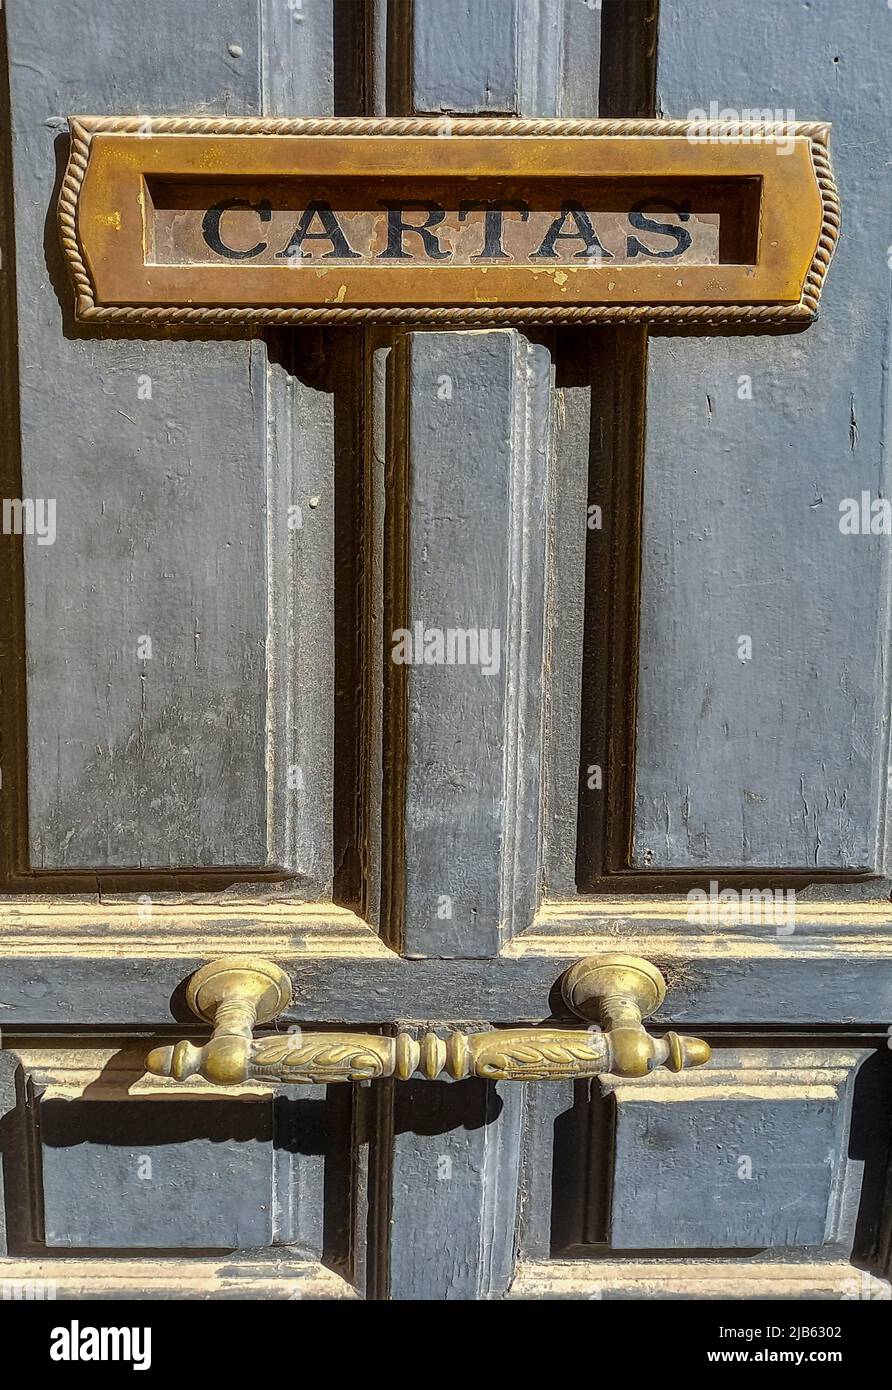 Caja de letras incorporada en una puerta de madera vieja y polvorienta. Título en español, enfoque selectivo. Foto de stock